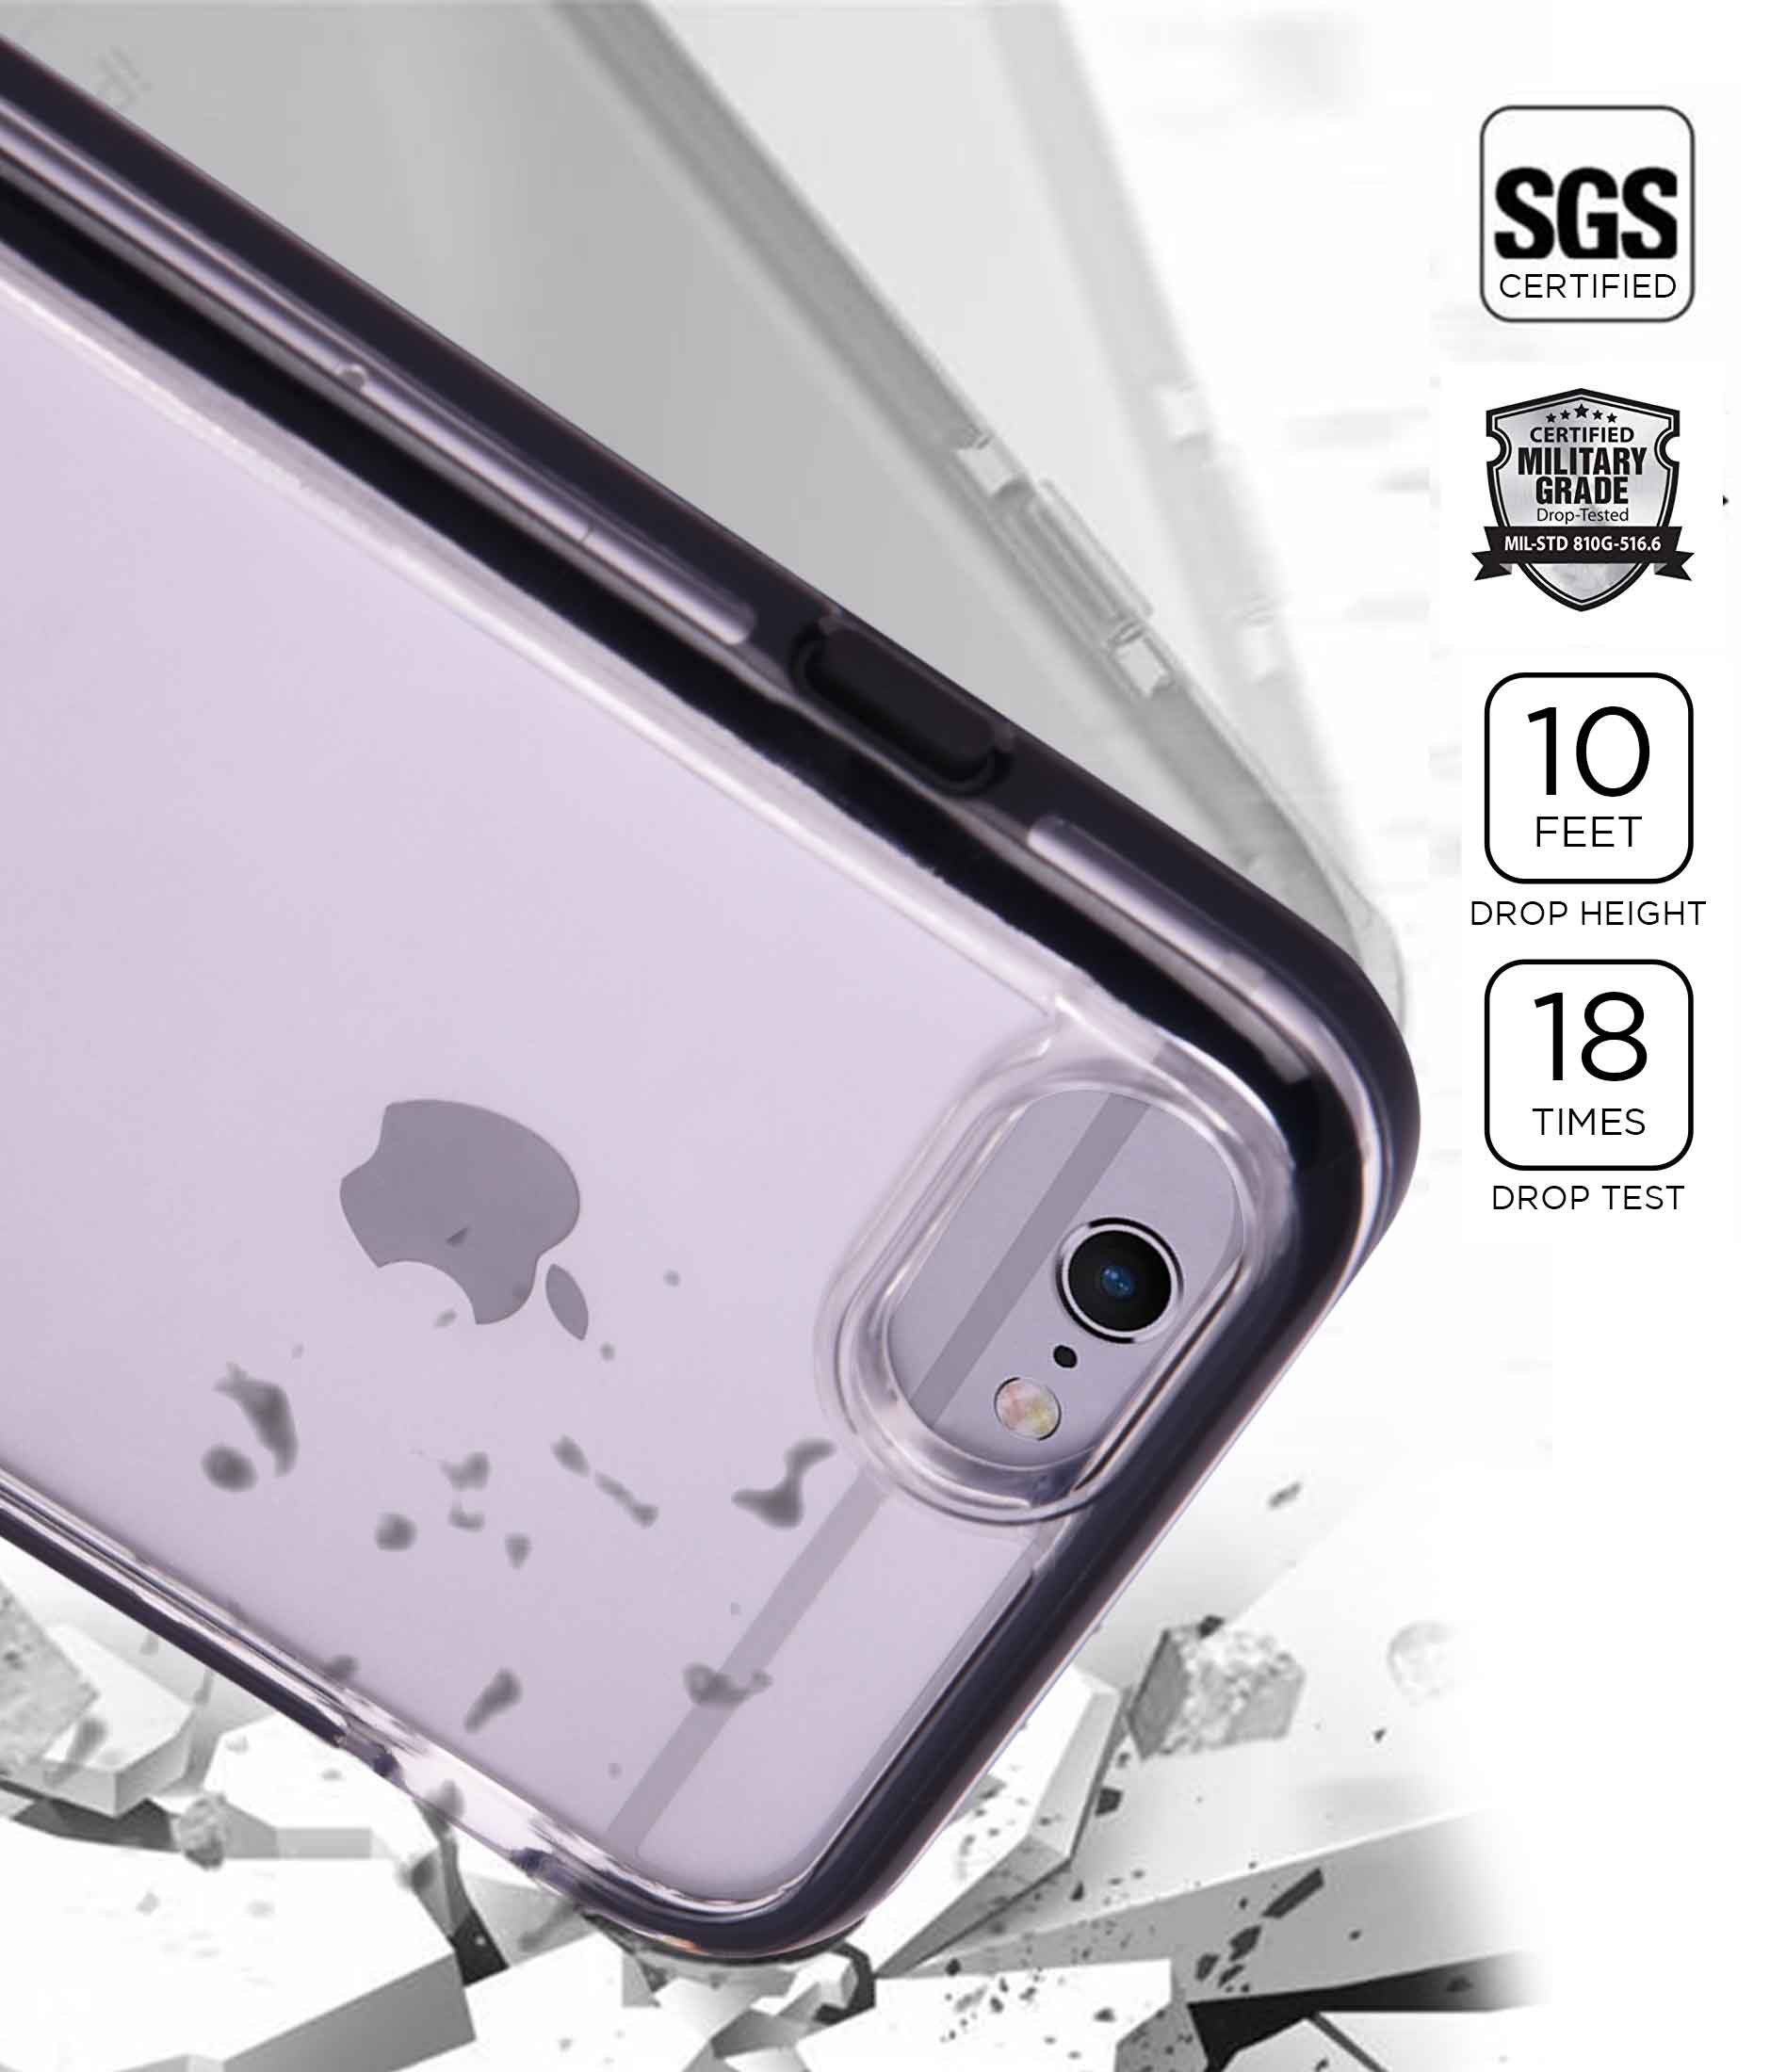 Illuminated Thanos - Extreme Phone Case for iPhone 6